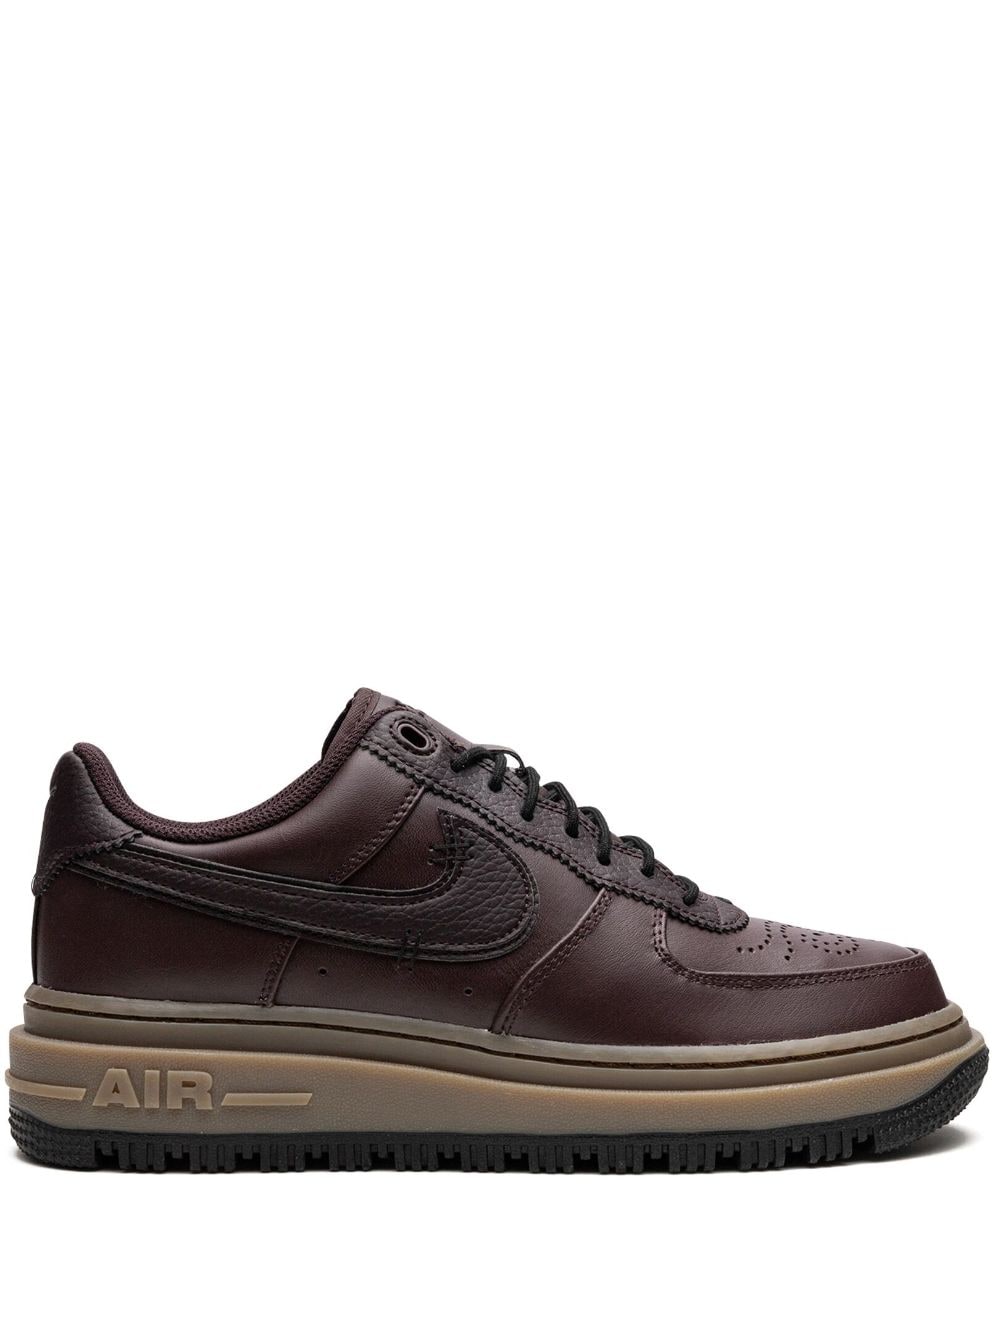 Nike Air Force 1 Low Luxe "Brown Basalt" sneakers von Nike